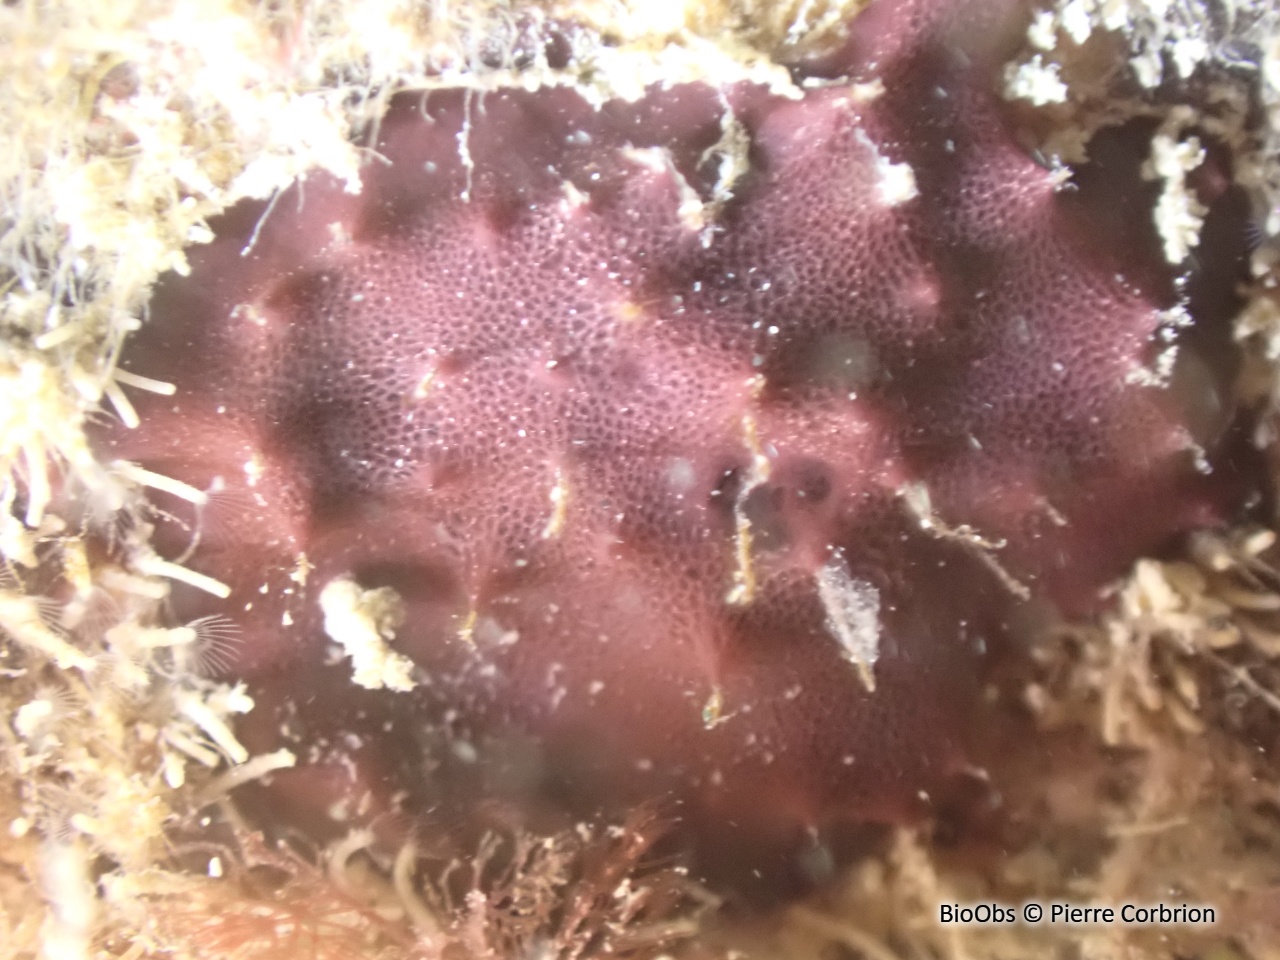 Eponge réticulée violet foncé - Chelonaplysilla noevus - Pierre Corbrion - BioObs